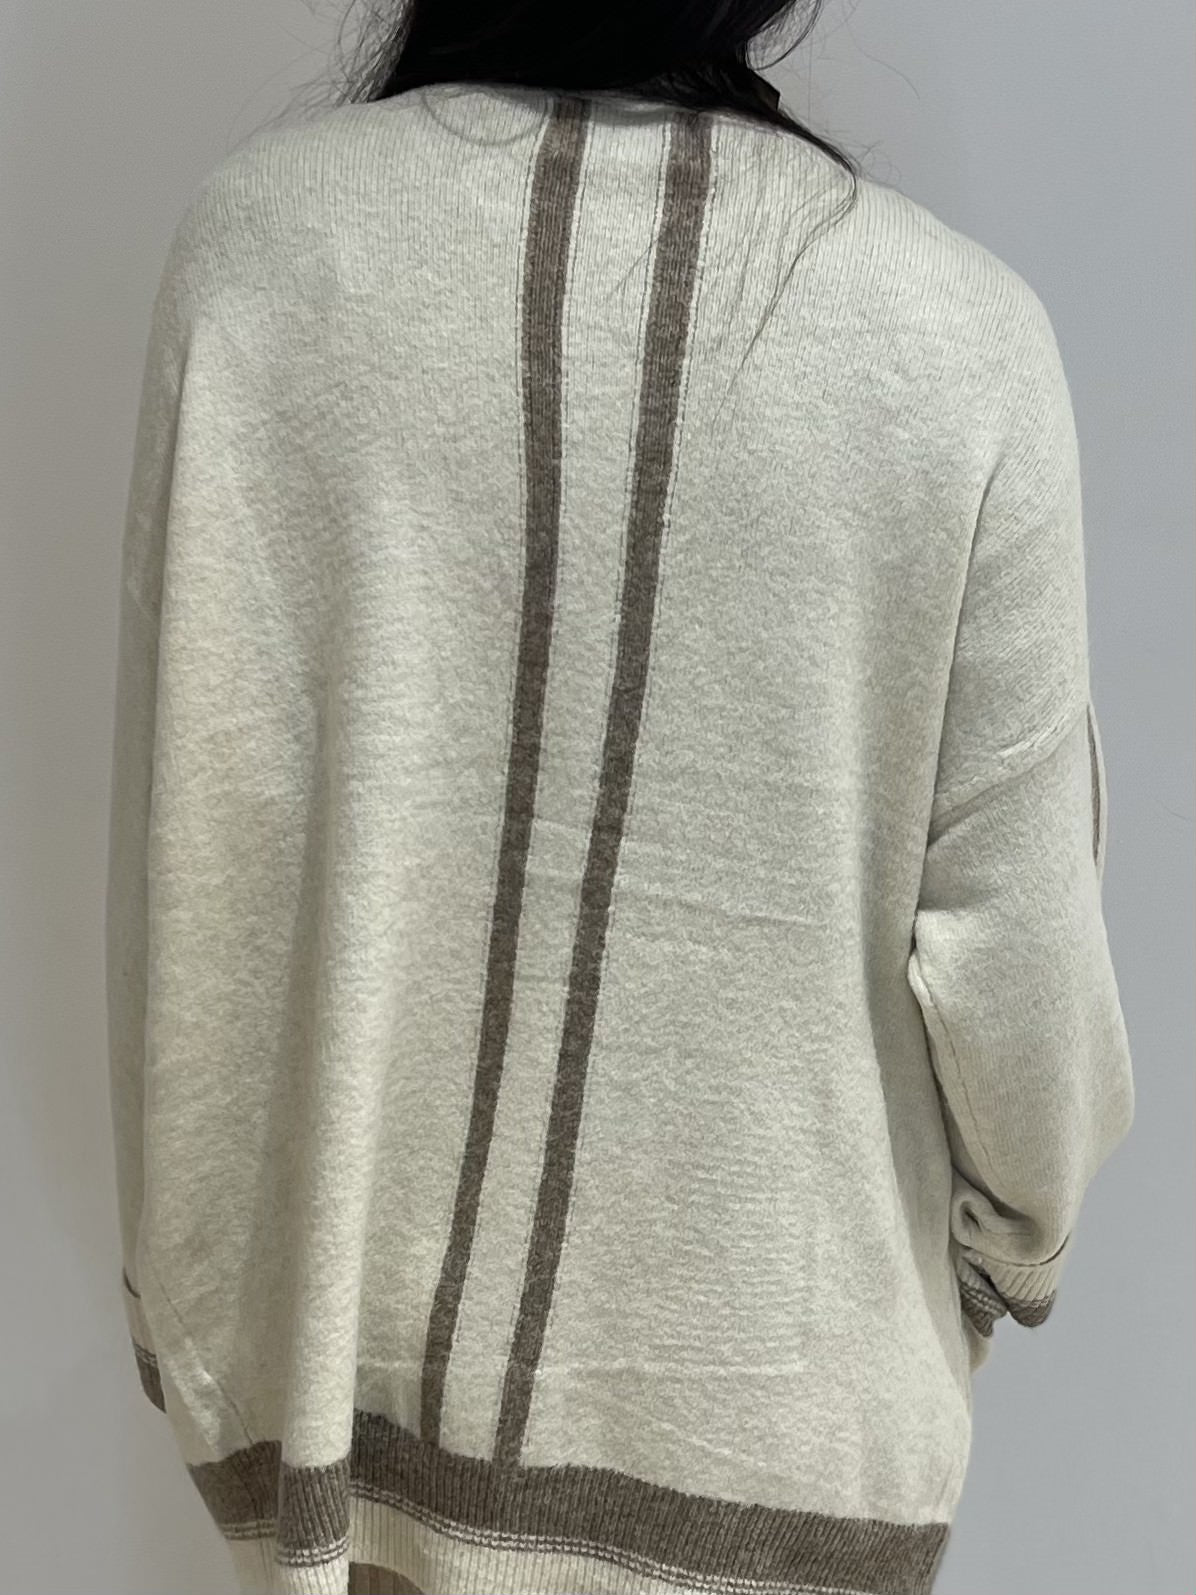 Vue arrière d'un gilet en laine écru avec des rayures taupe, mettant en valeur le design et la coupe confortable.